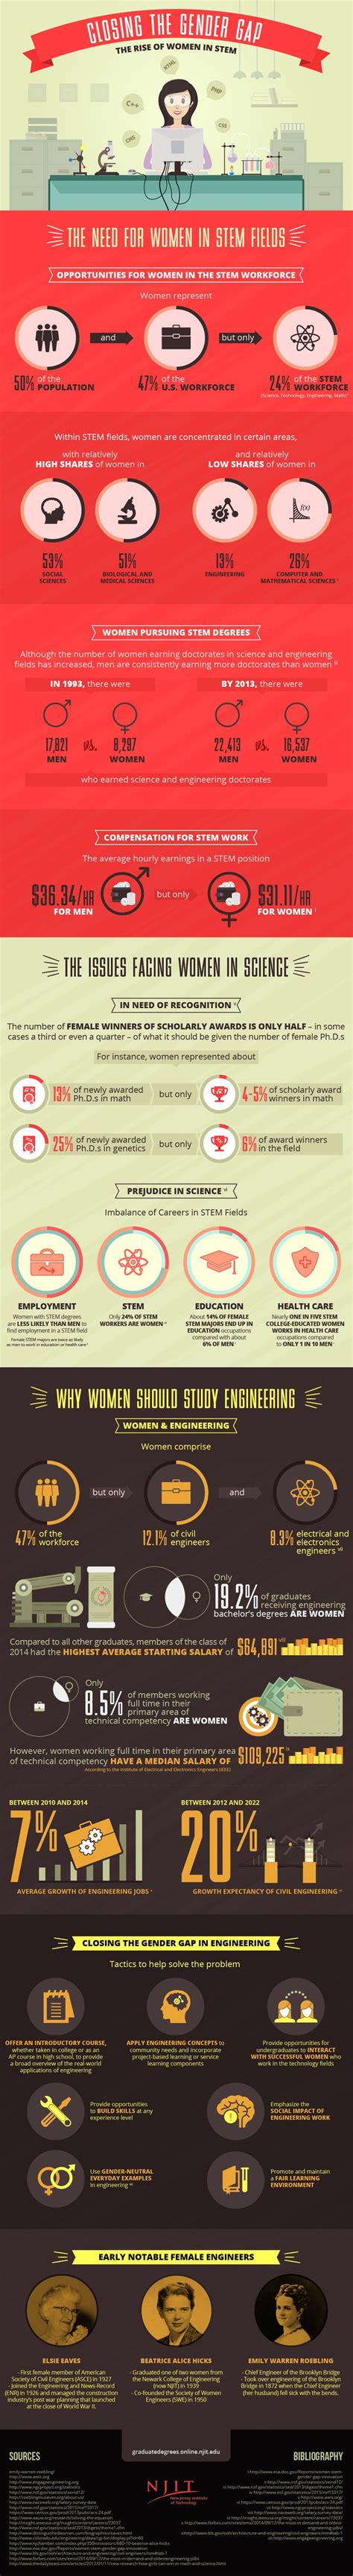 Engineering A Way To Close The Gender Gap In Stem Gender Gap